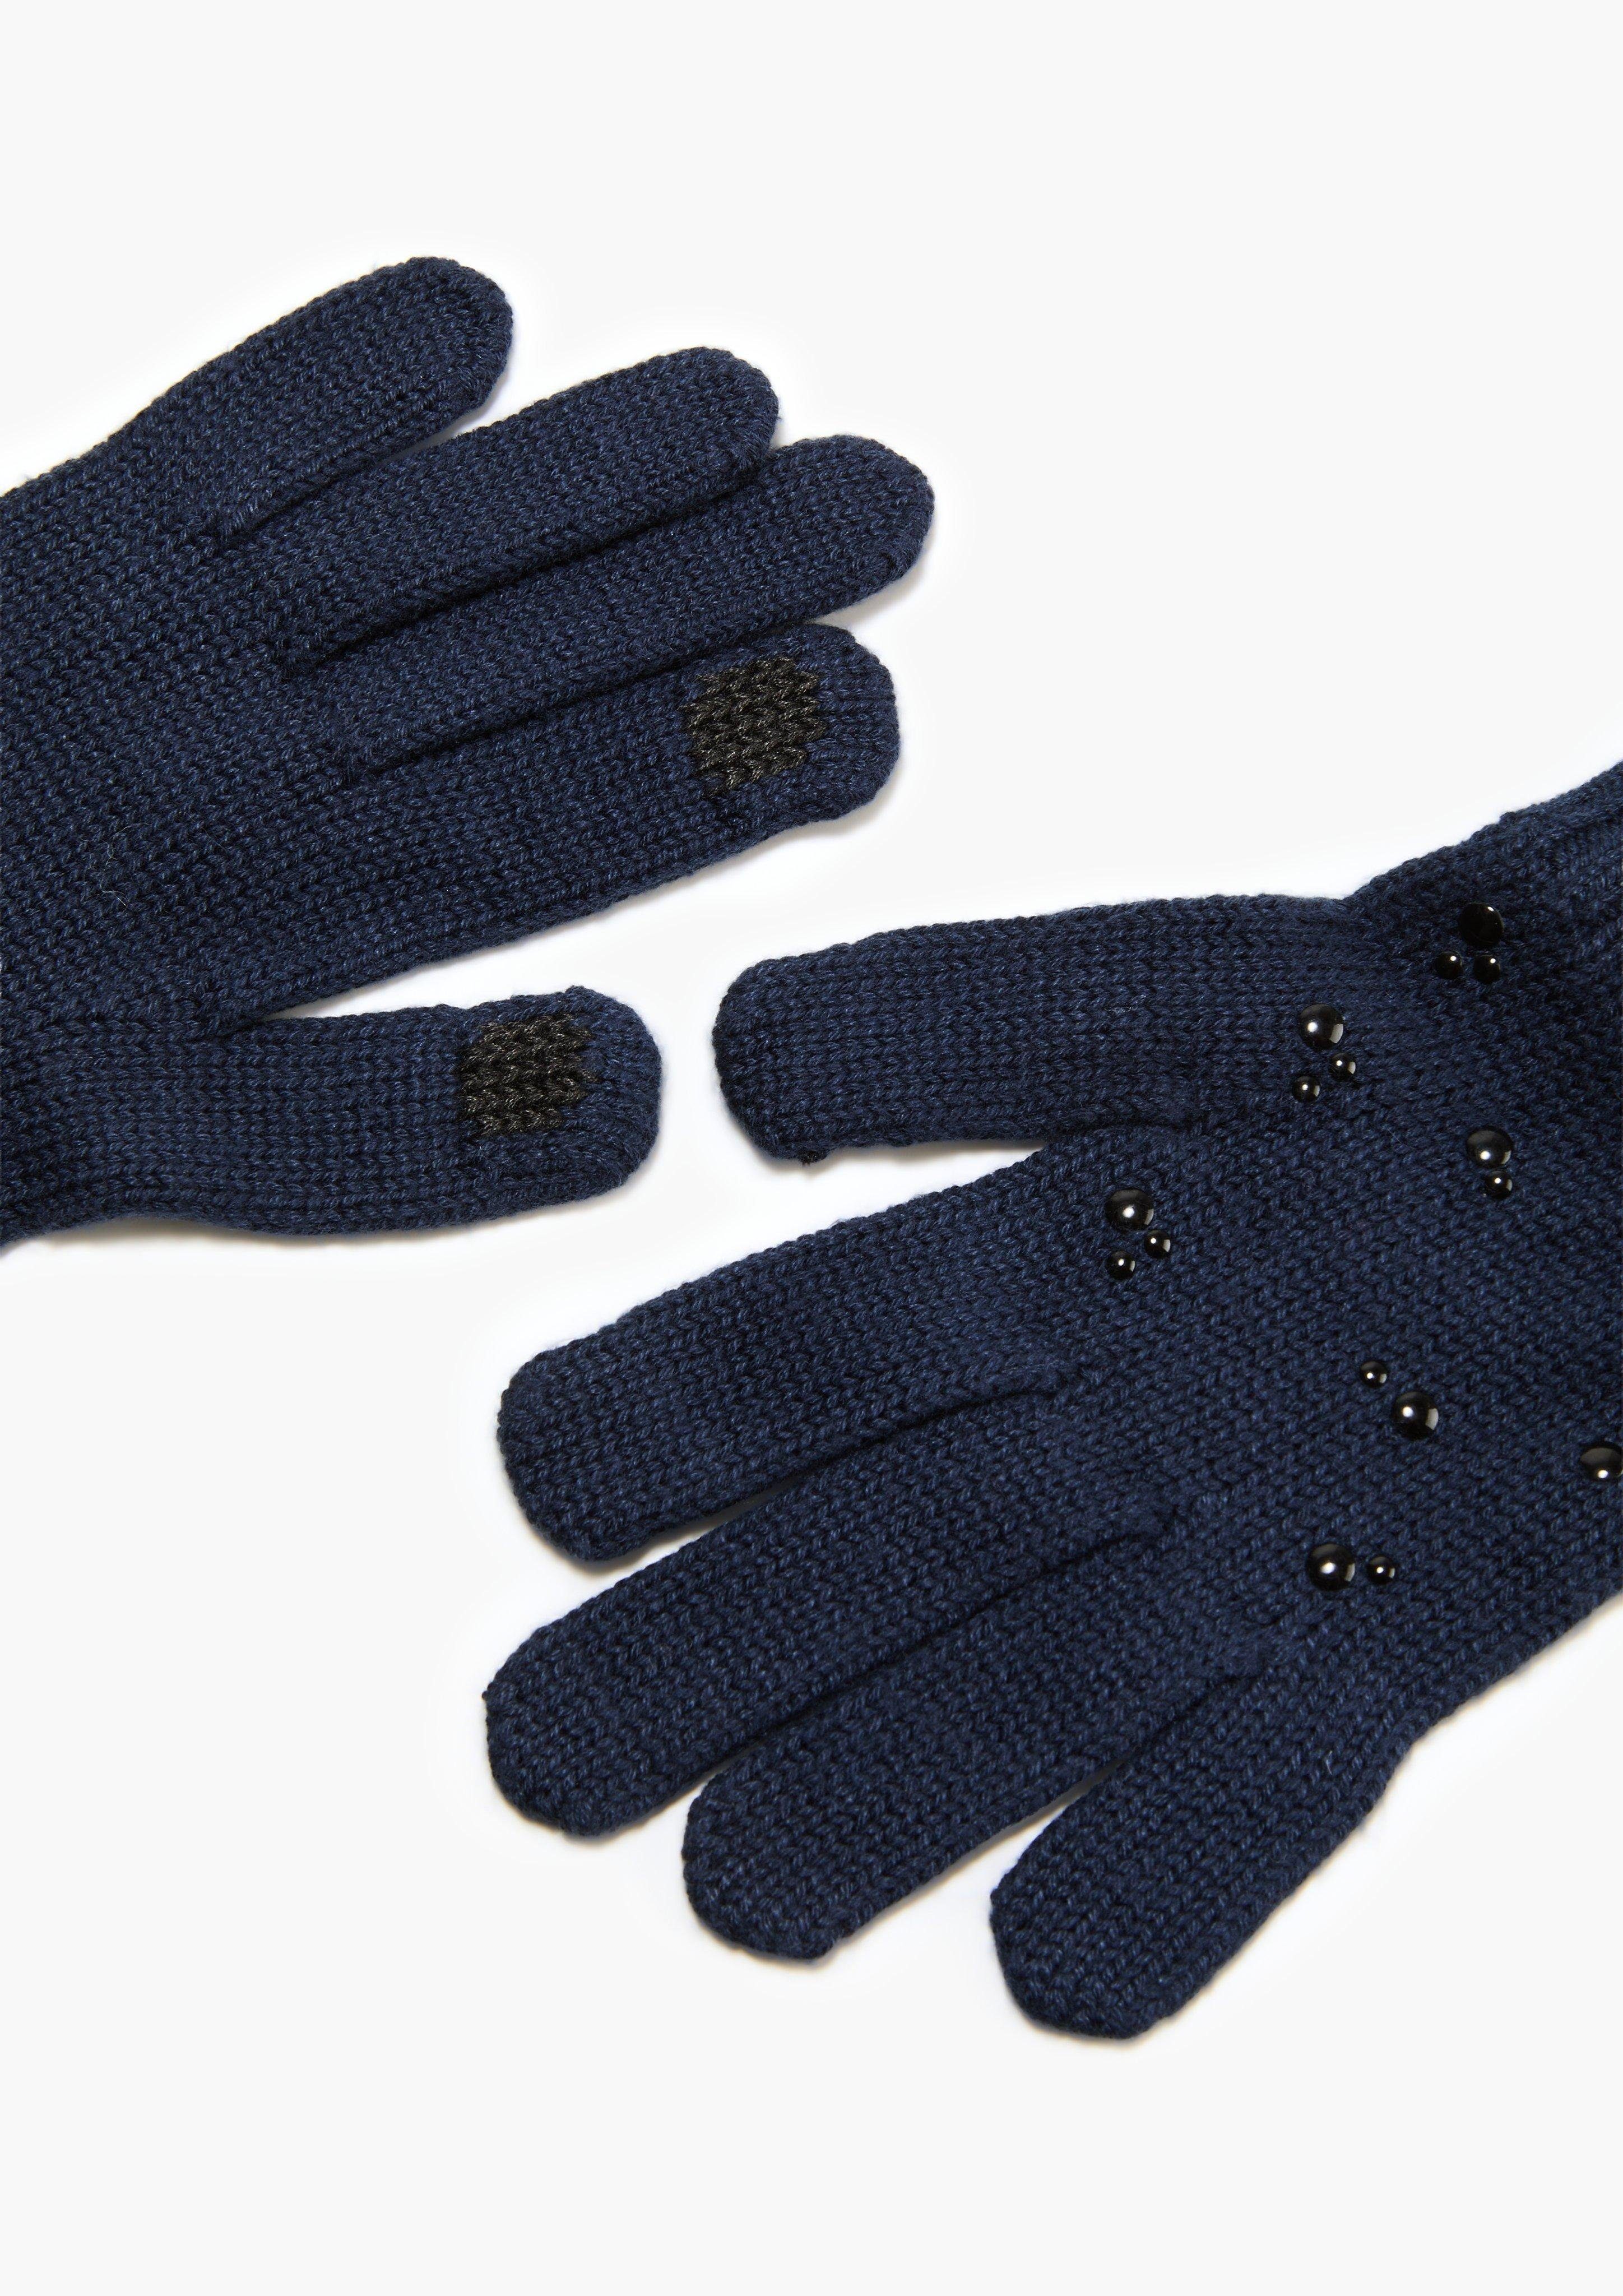 Rippbündchen s.Oliver aus navy Modalmix Handschuhe Strickhandschuhe